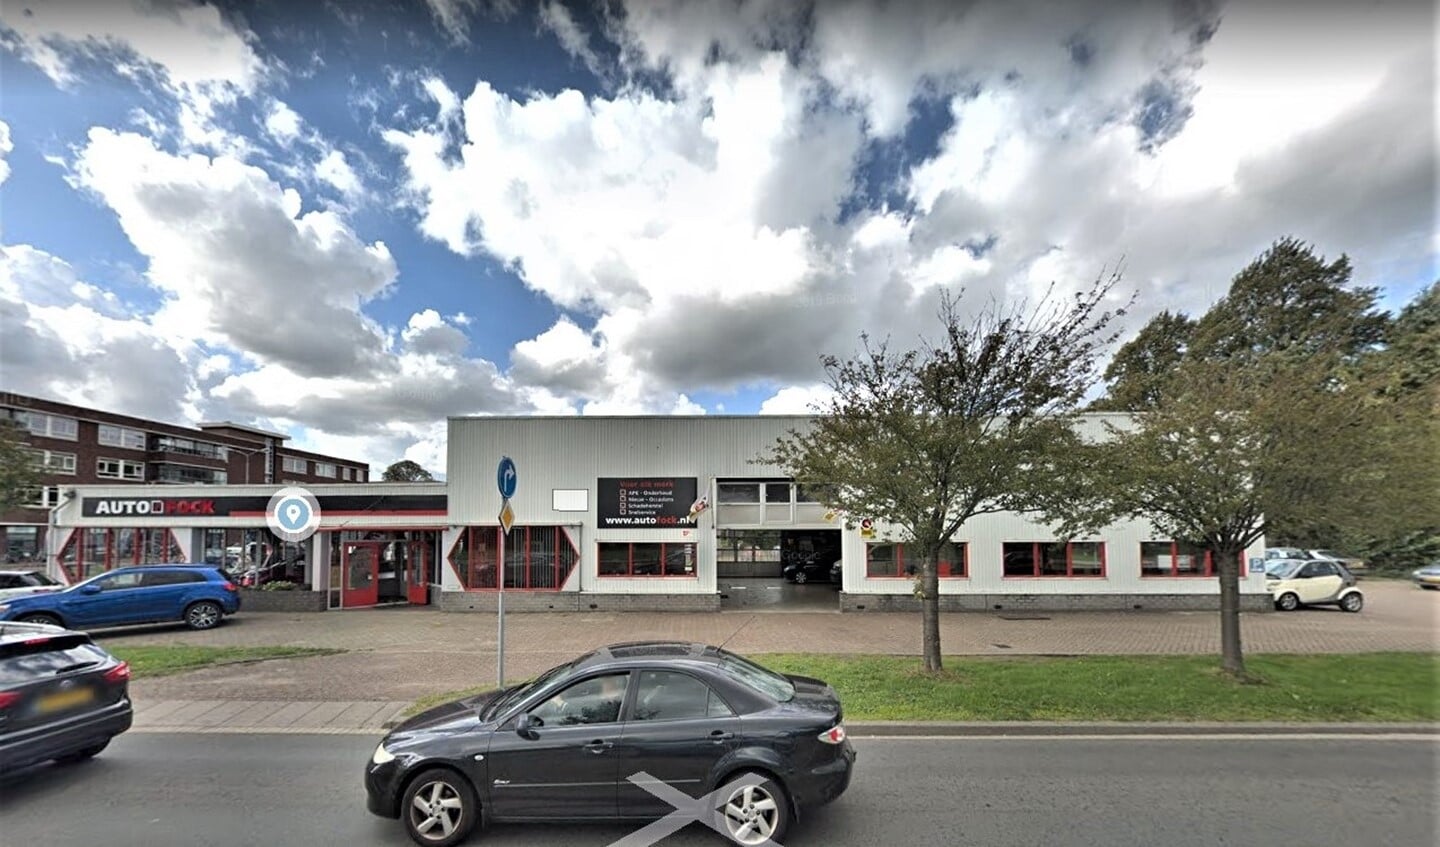 De locatie Oude Trambaan 40 waar Autobedrijf Fock is gevestigd (foto: Google Streetview).